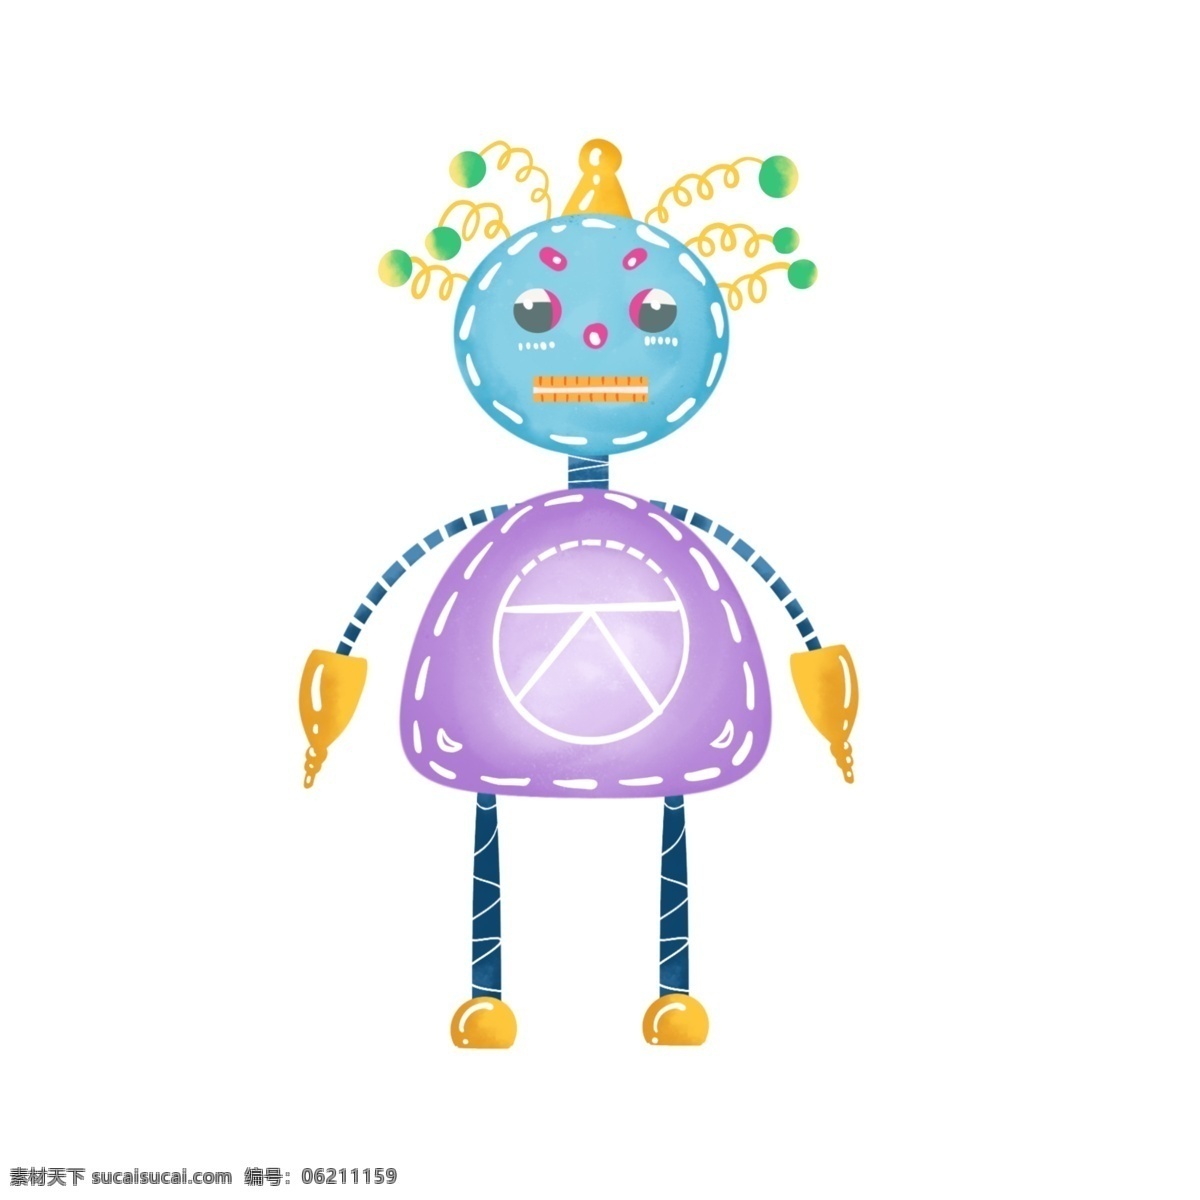 机器人 手绘 卡通 创意 手绘机器人 卡通机器人 机械 弹簧 机器 创意机器人 效果元素